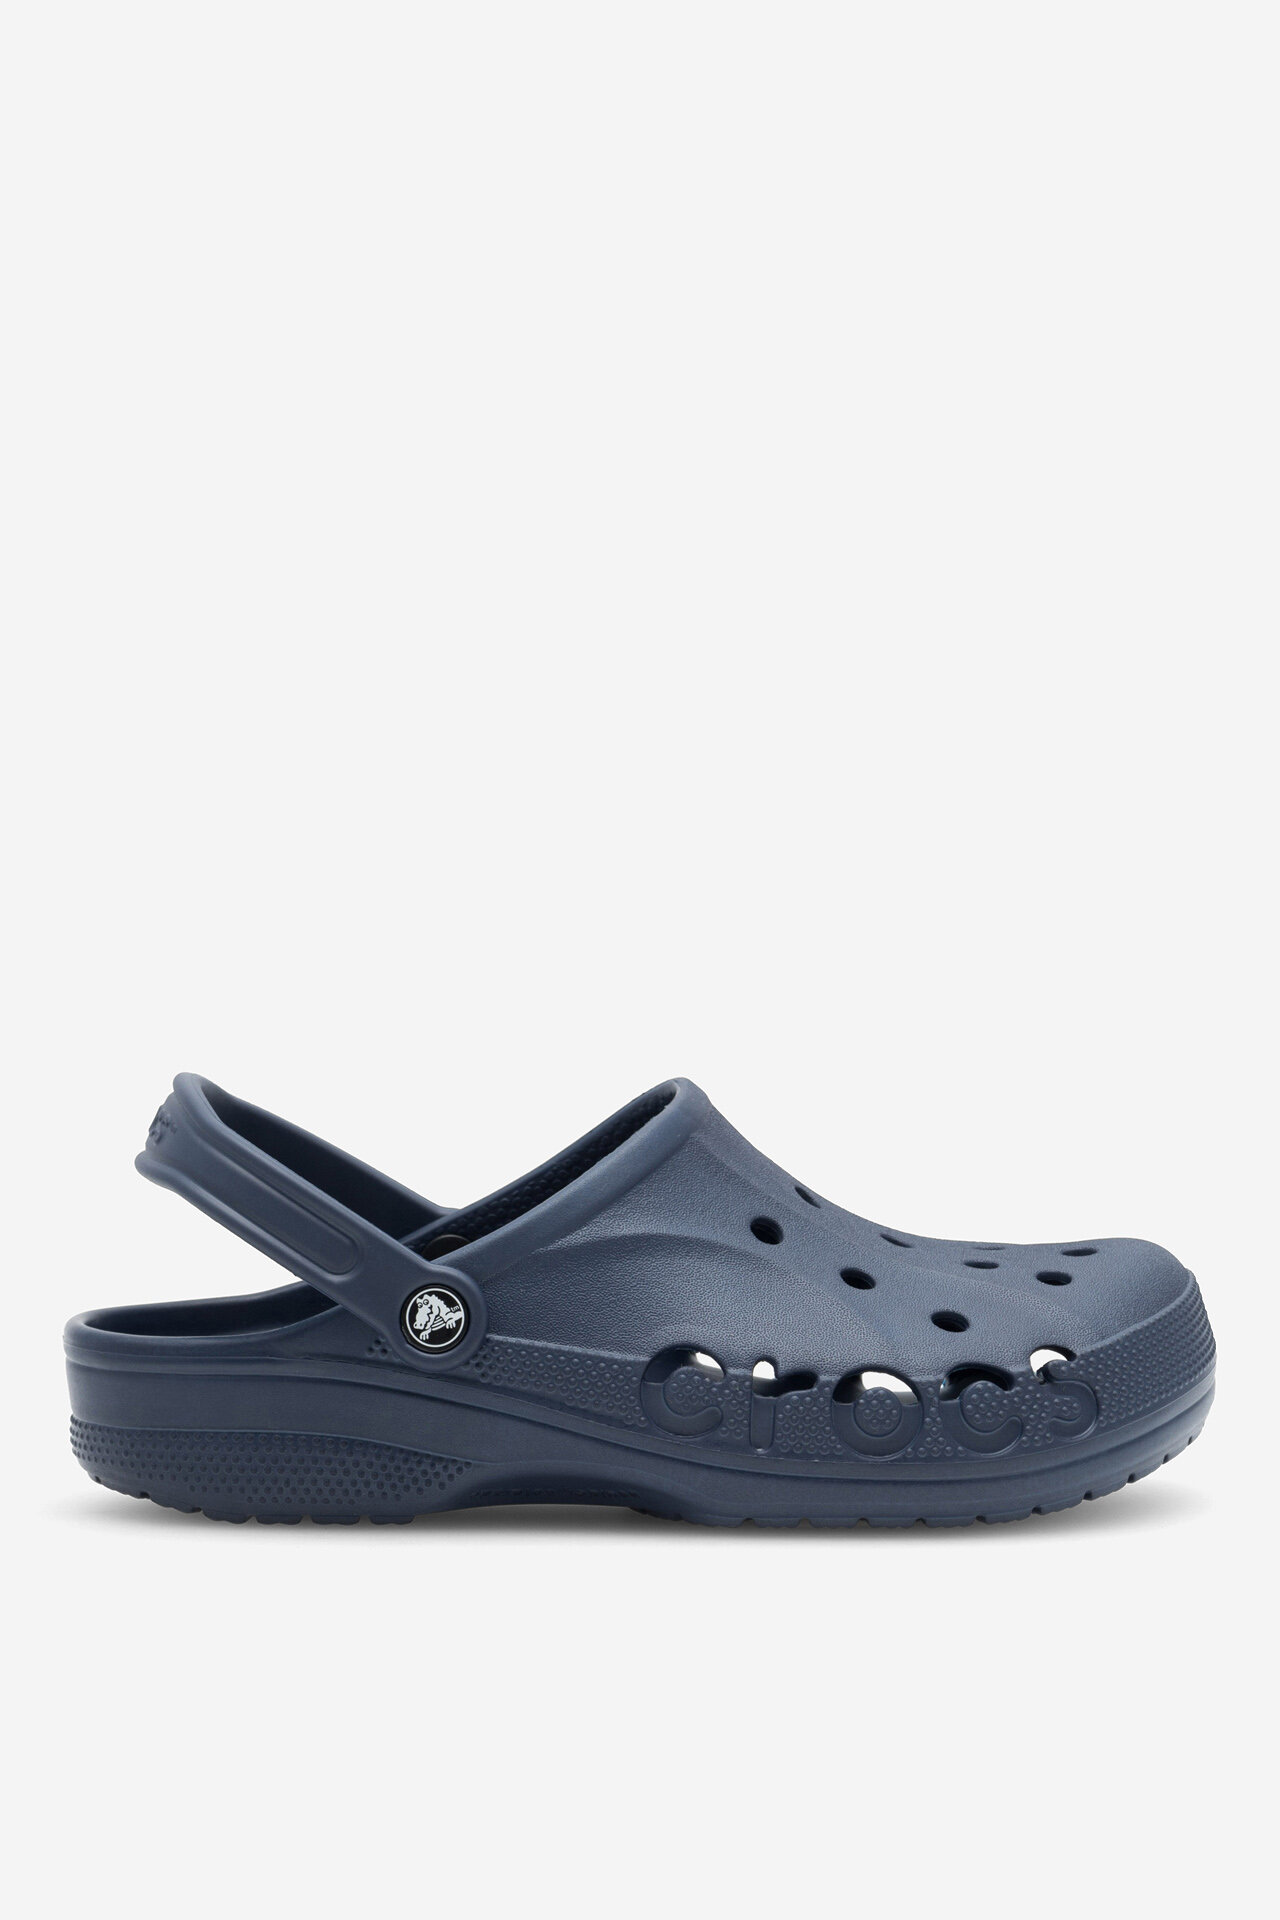 Strandpapucs Crocs